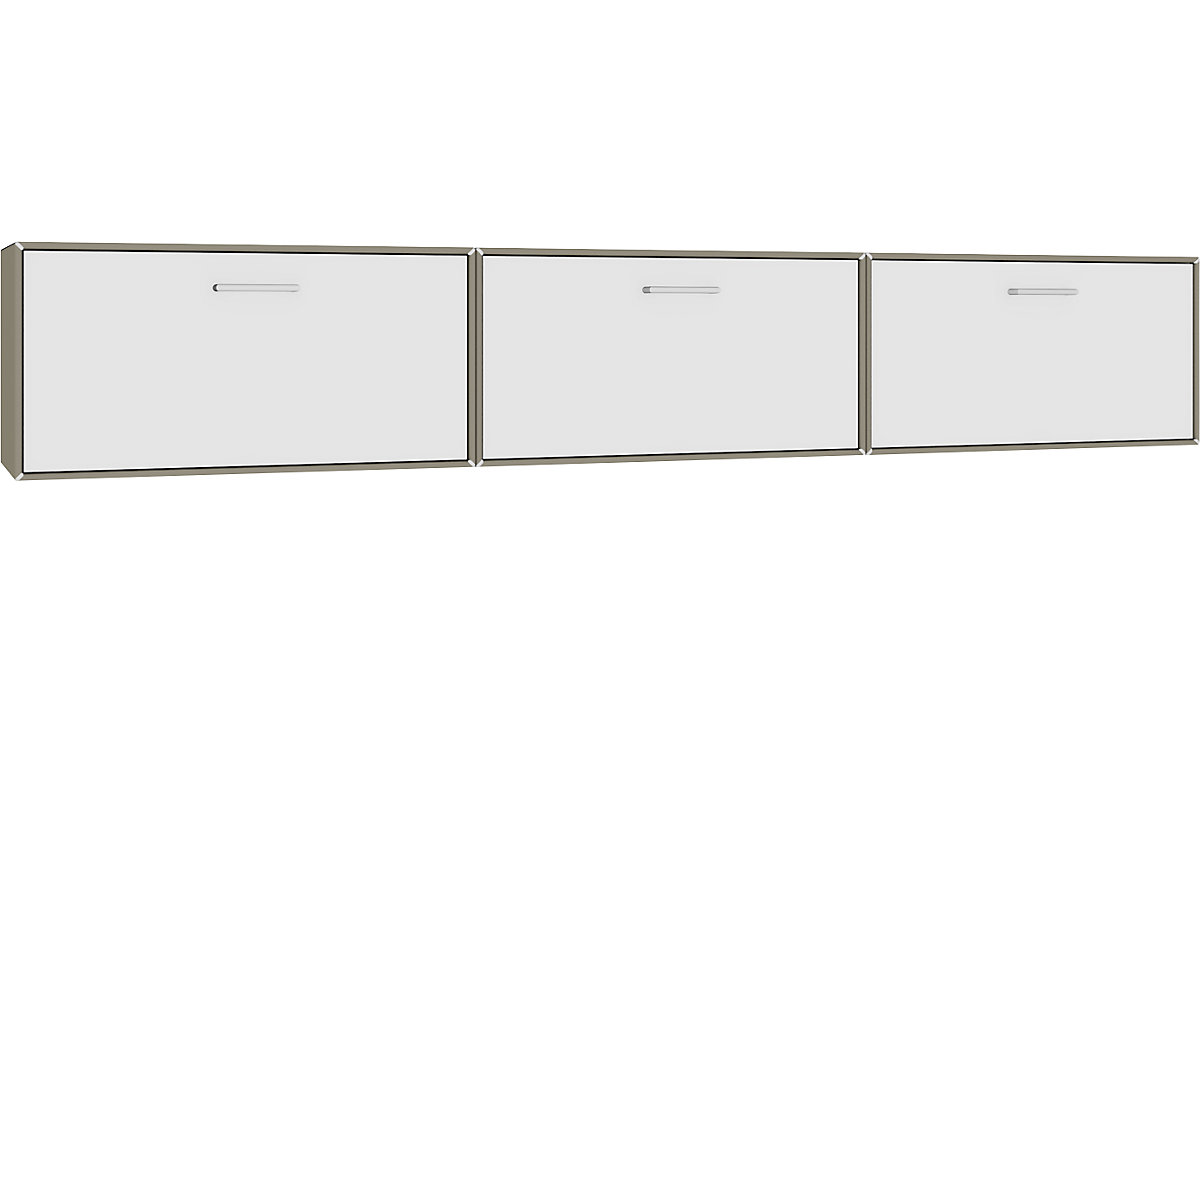 Combinación de muebles-bar colgantes – mauser, 3 barras abatibles, gris beige / blanco puro-3